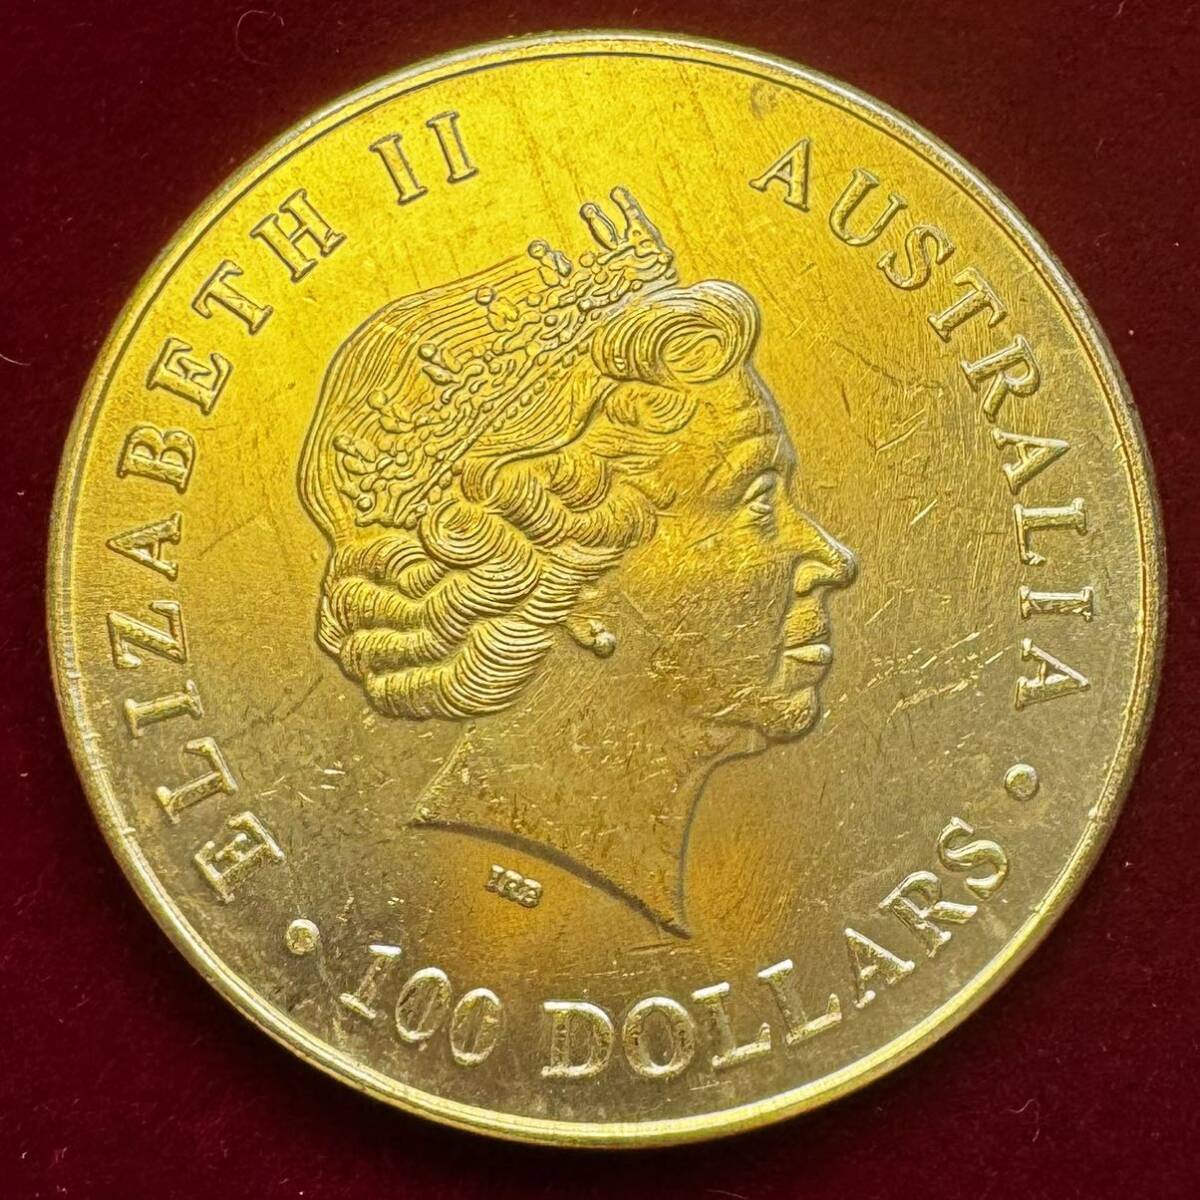 オーストラリア 硬貨 古銭 エリザベス2世 2015年 カンガルー 月光 記念幣 コイン 金貨 外国古銭 の画像2